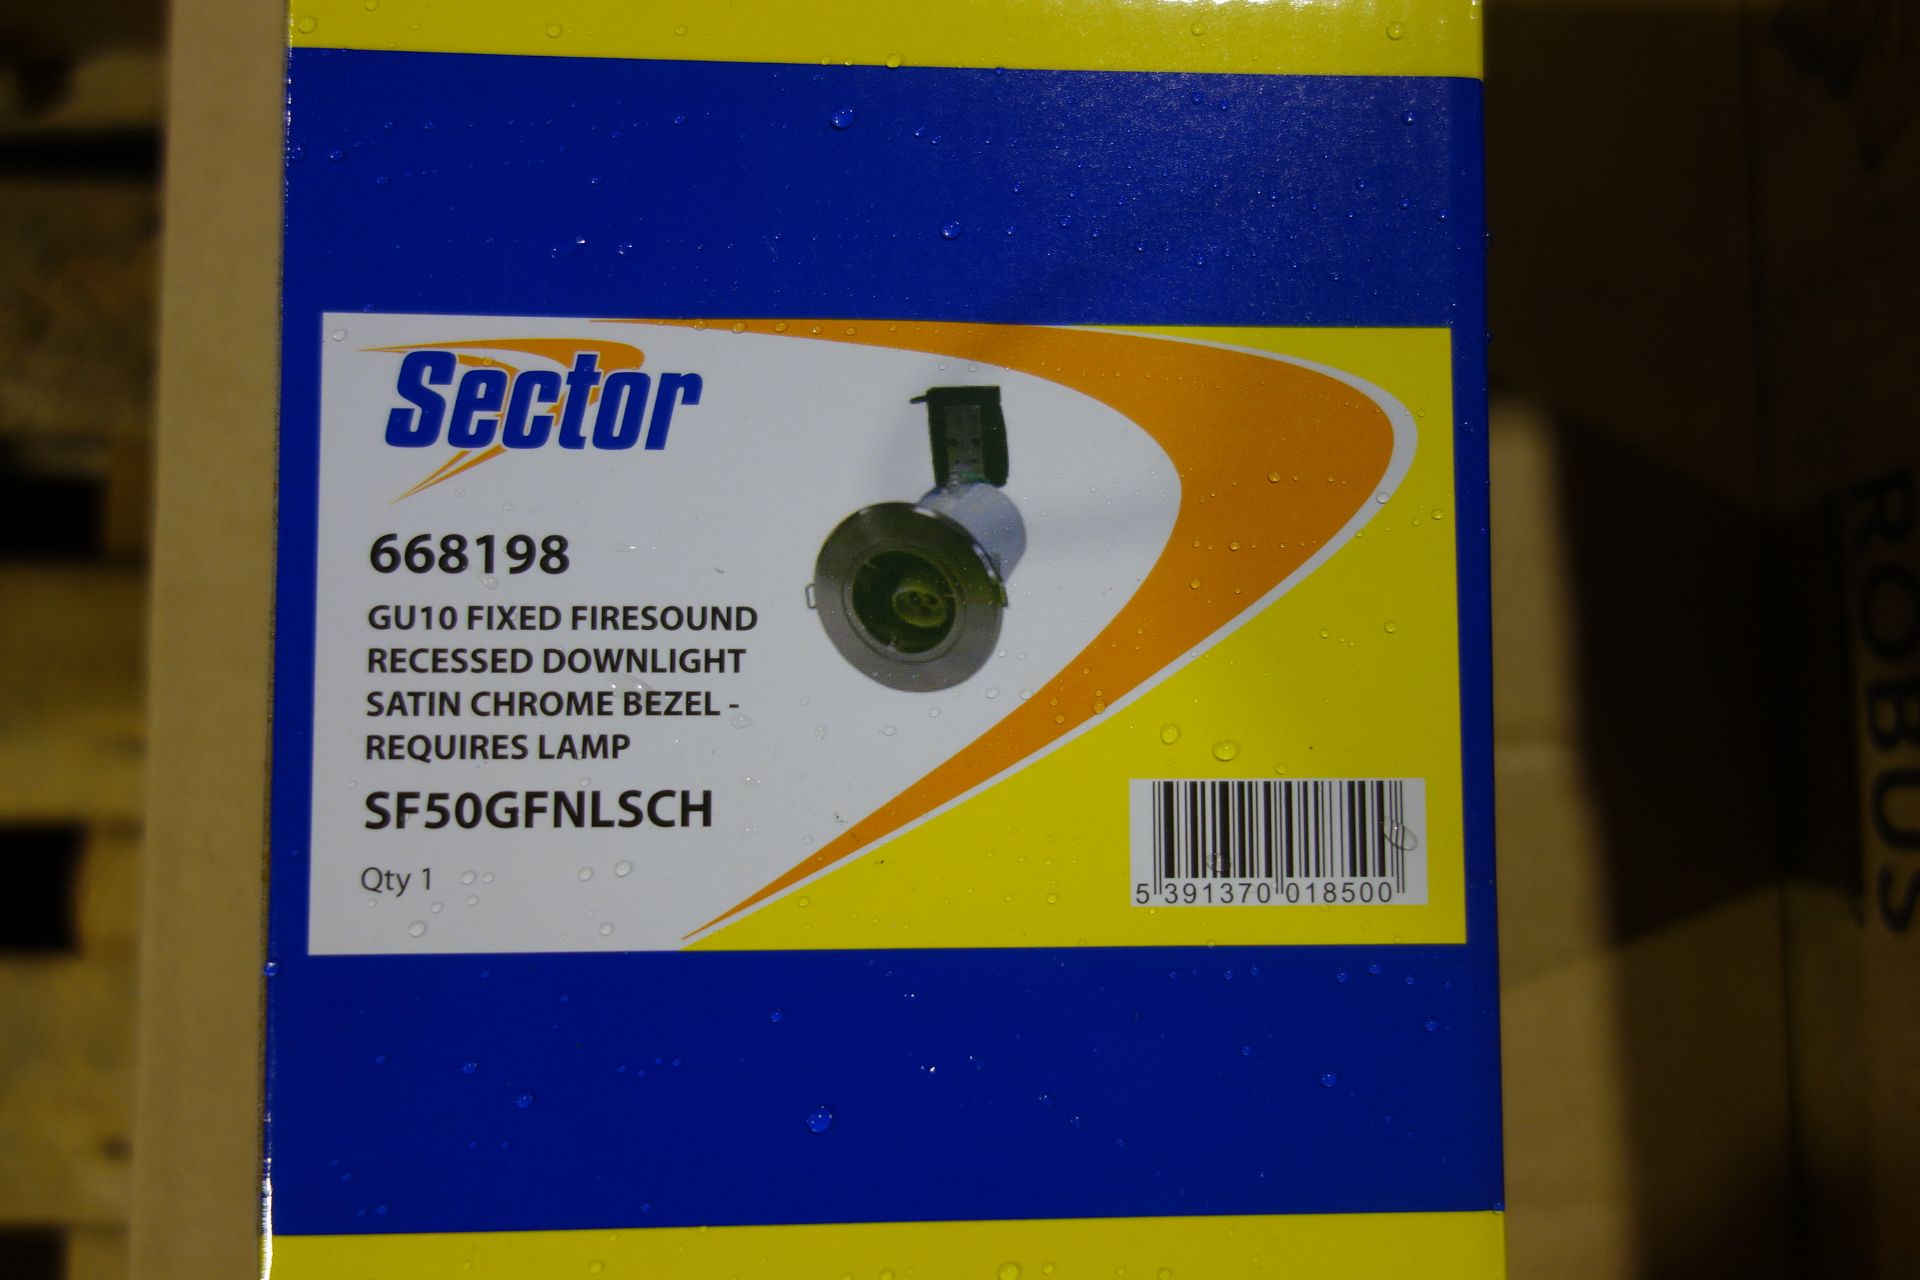 60 X Sector 668198 GU10 Fixed Fire Sound Downlight Satin Chrome Bezel Lamp Not INC: